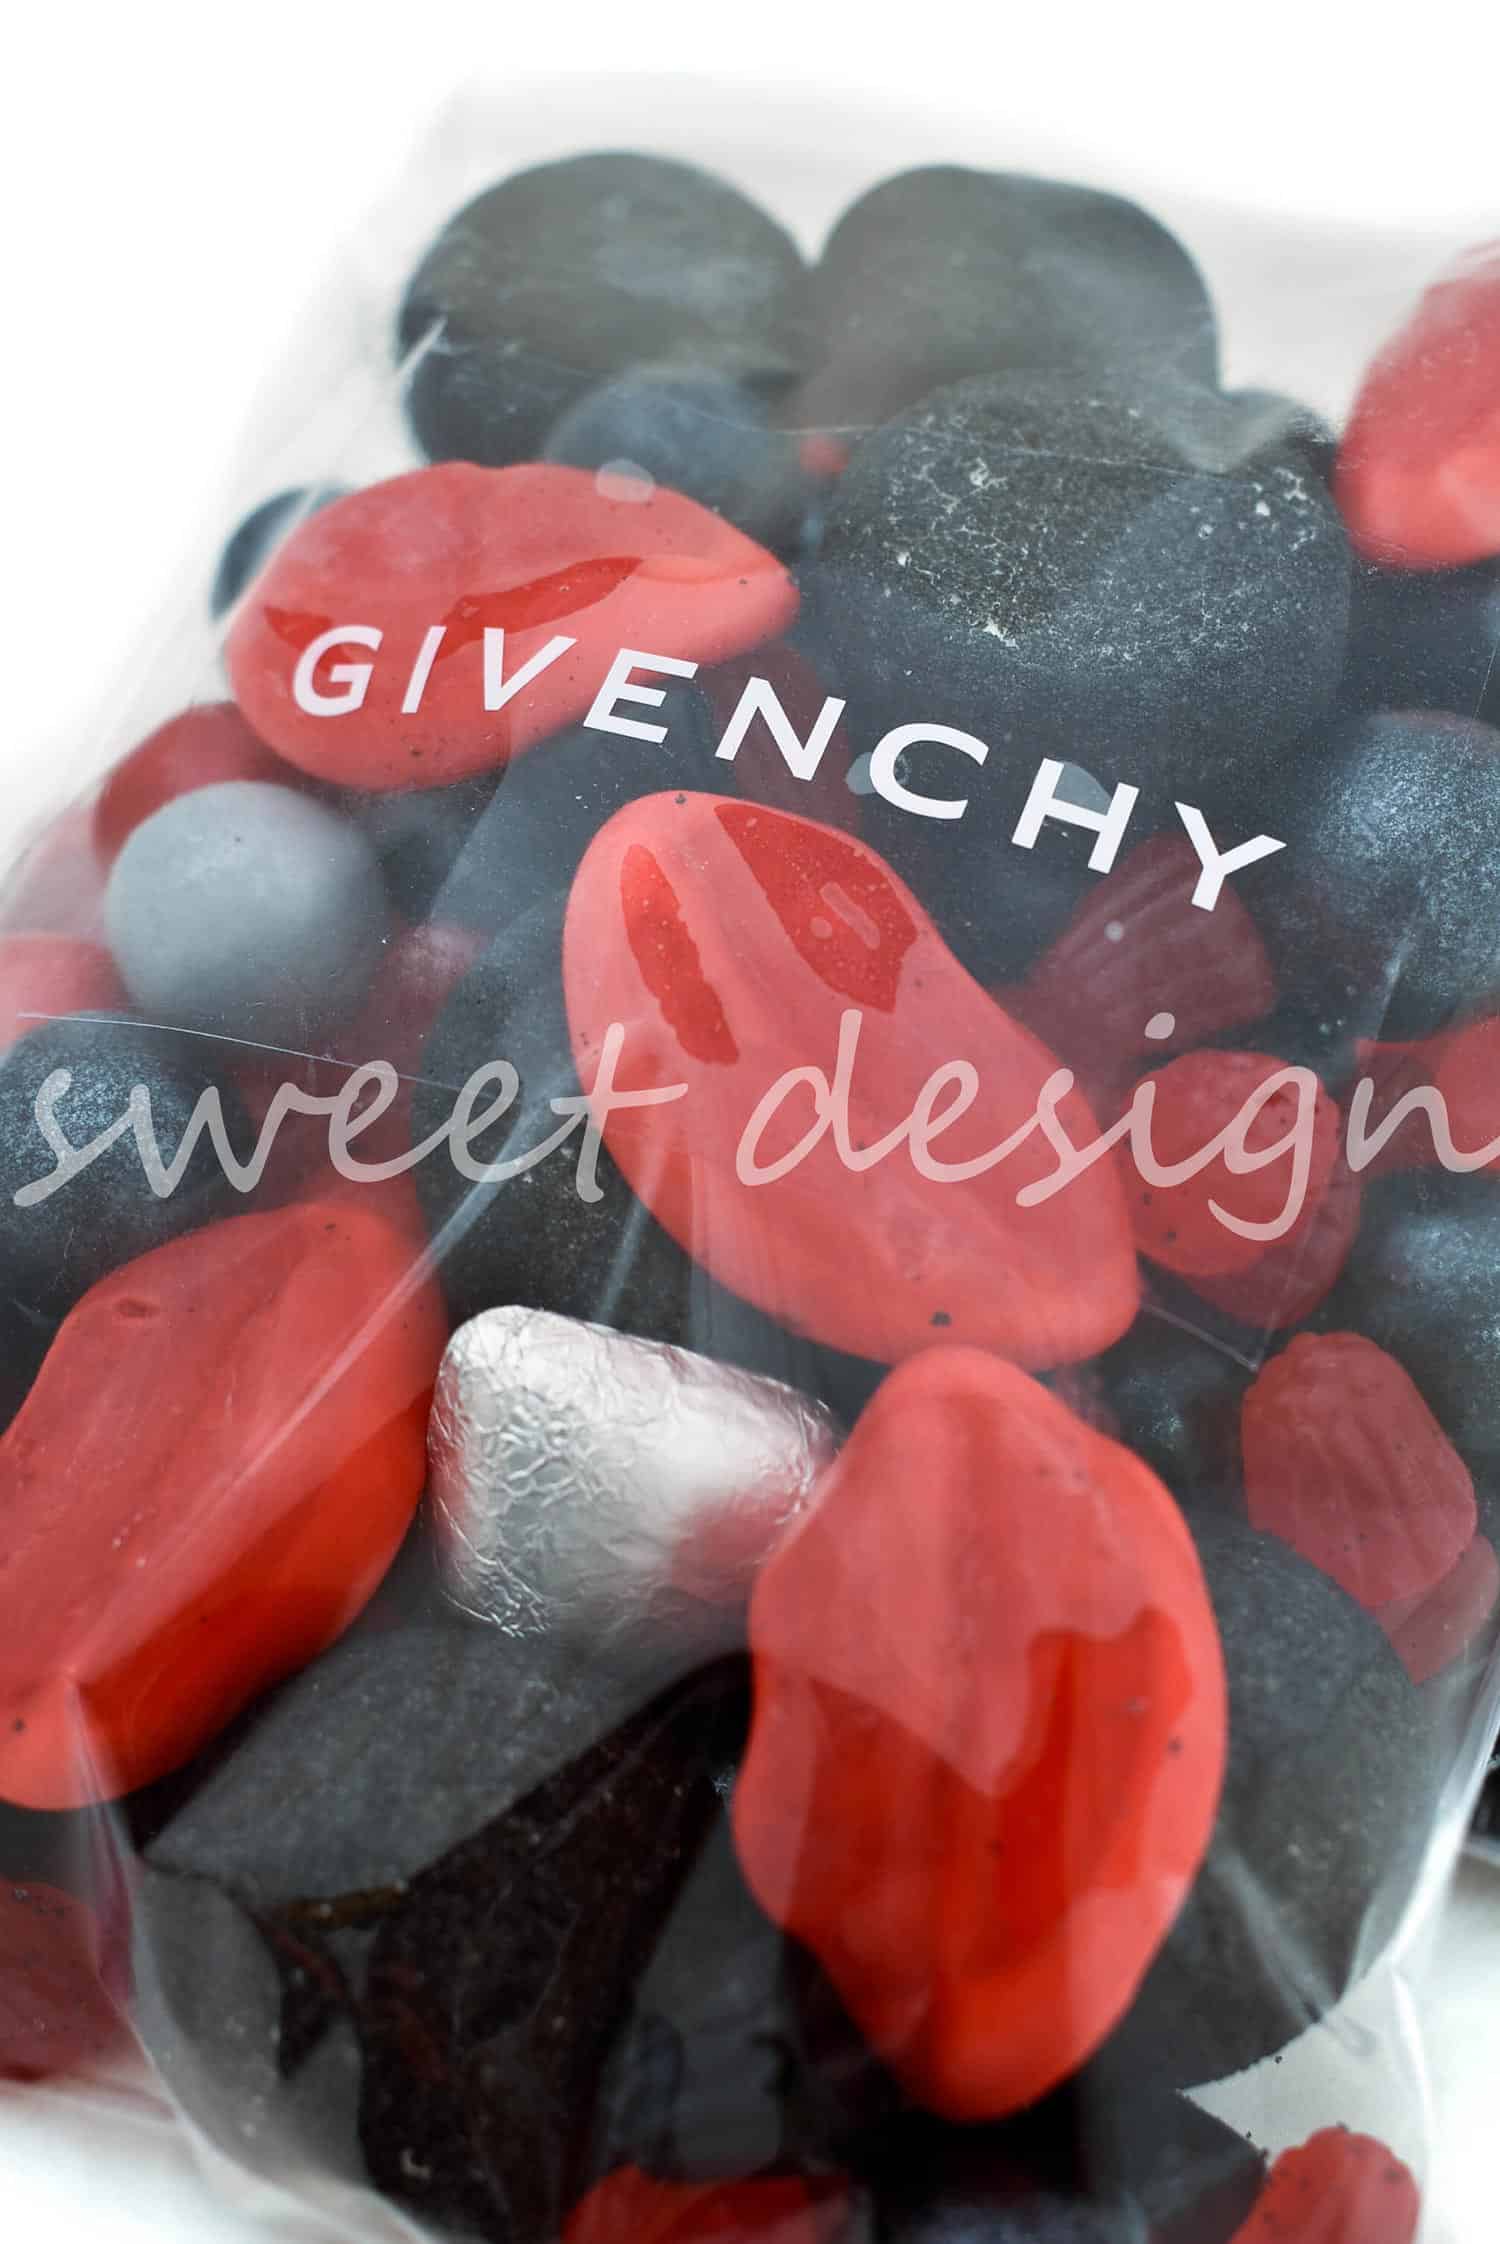 Bolsa con Surtido de Chuches - Sweet Design - Detalle Promocional